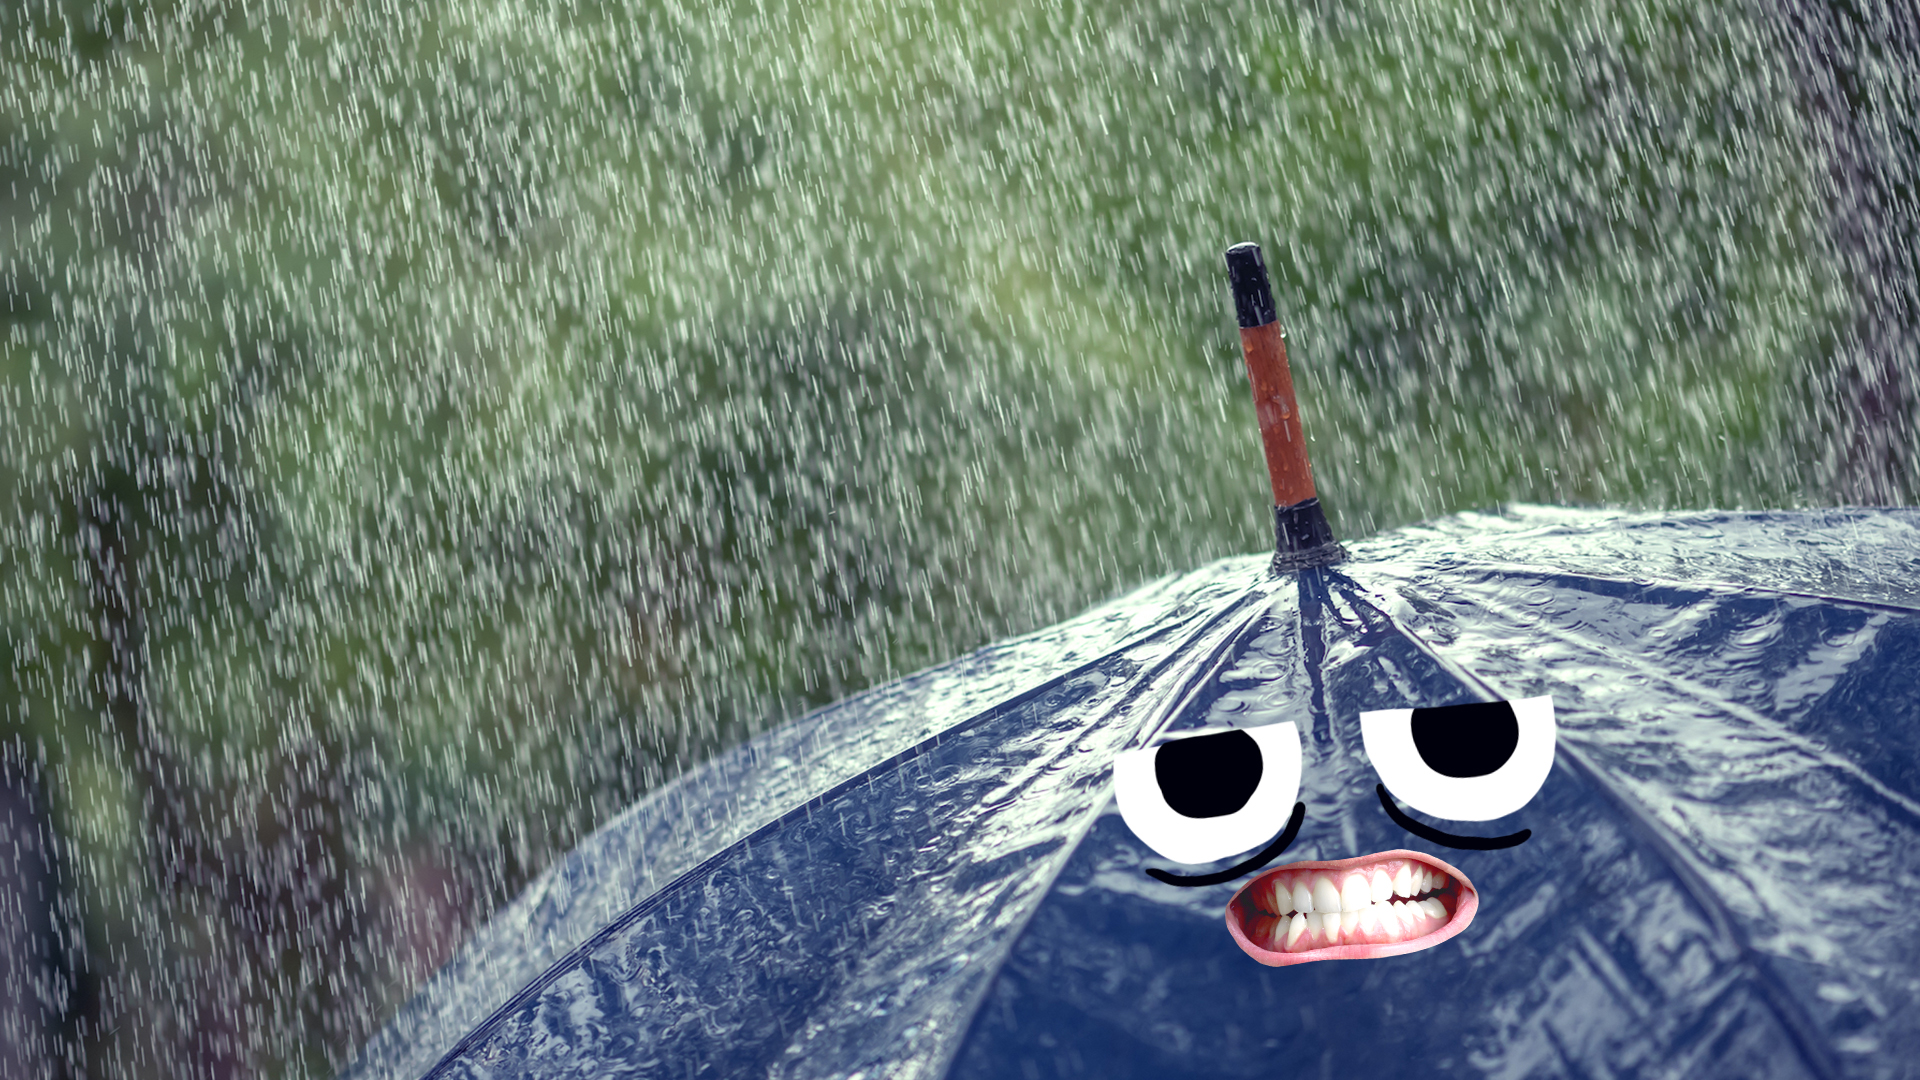 A moody umbrella